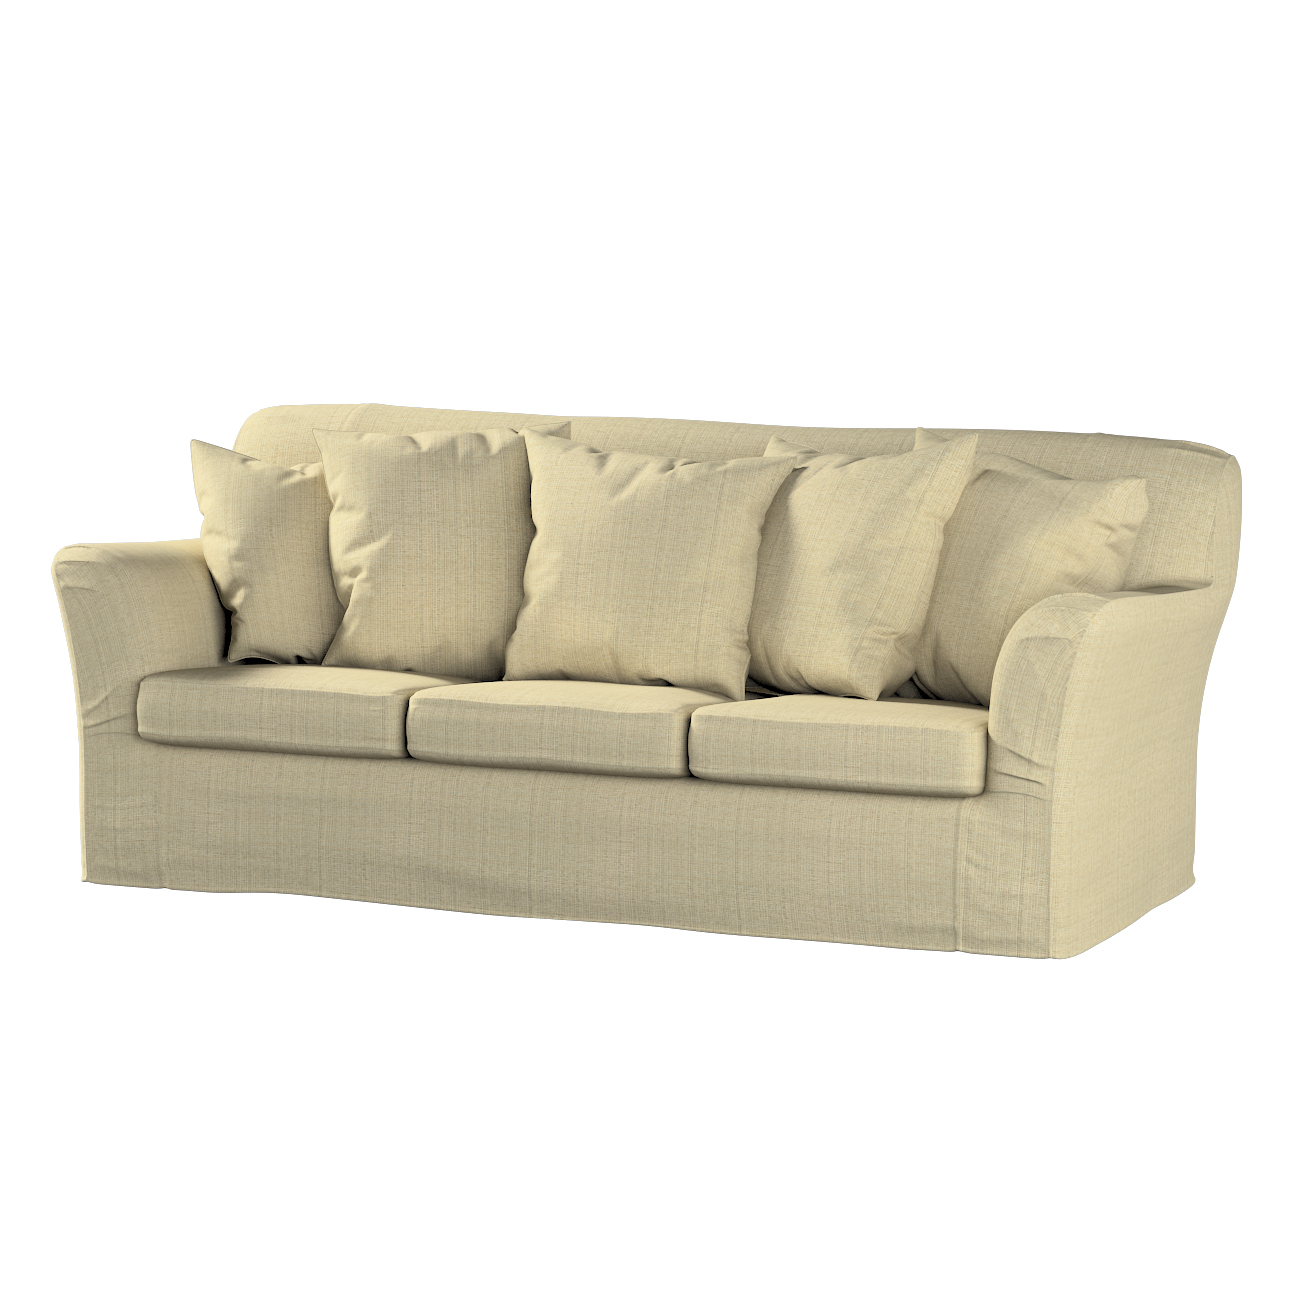 Bezug für Tomelilla 3-Sitzer Sofa nicht ausklappbar, beige-creme, Sofahusse günstig online kaufen